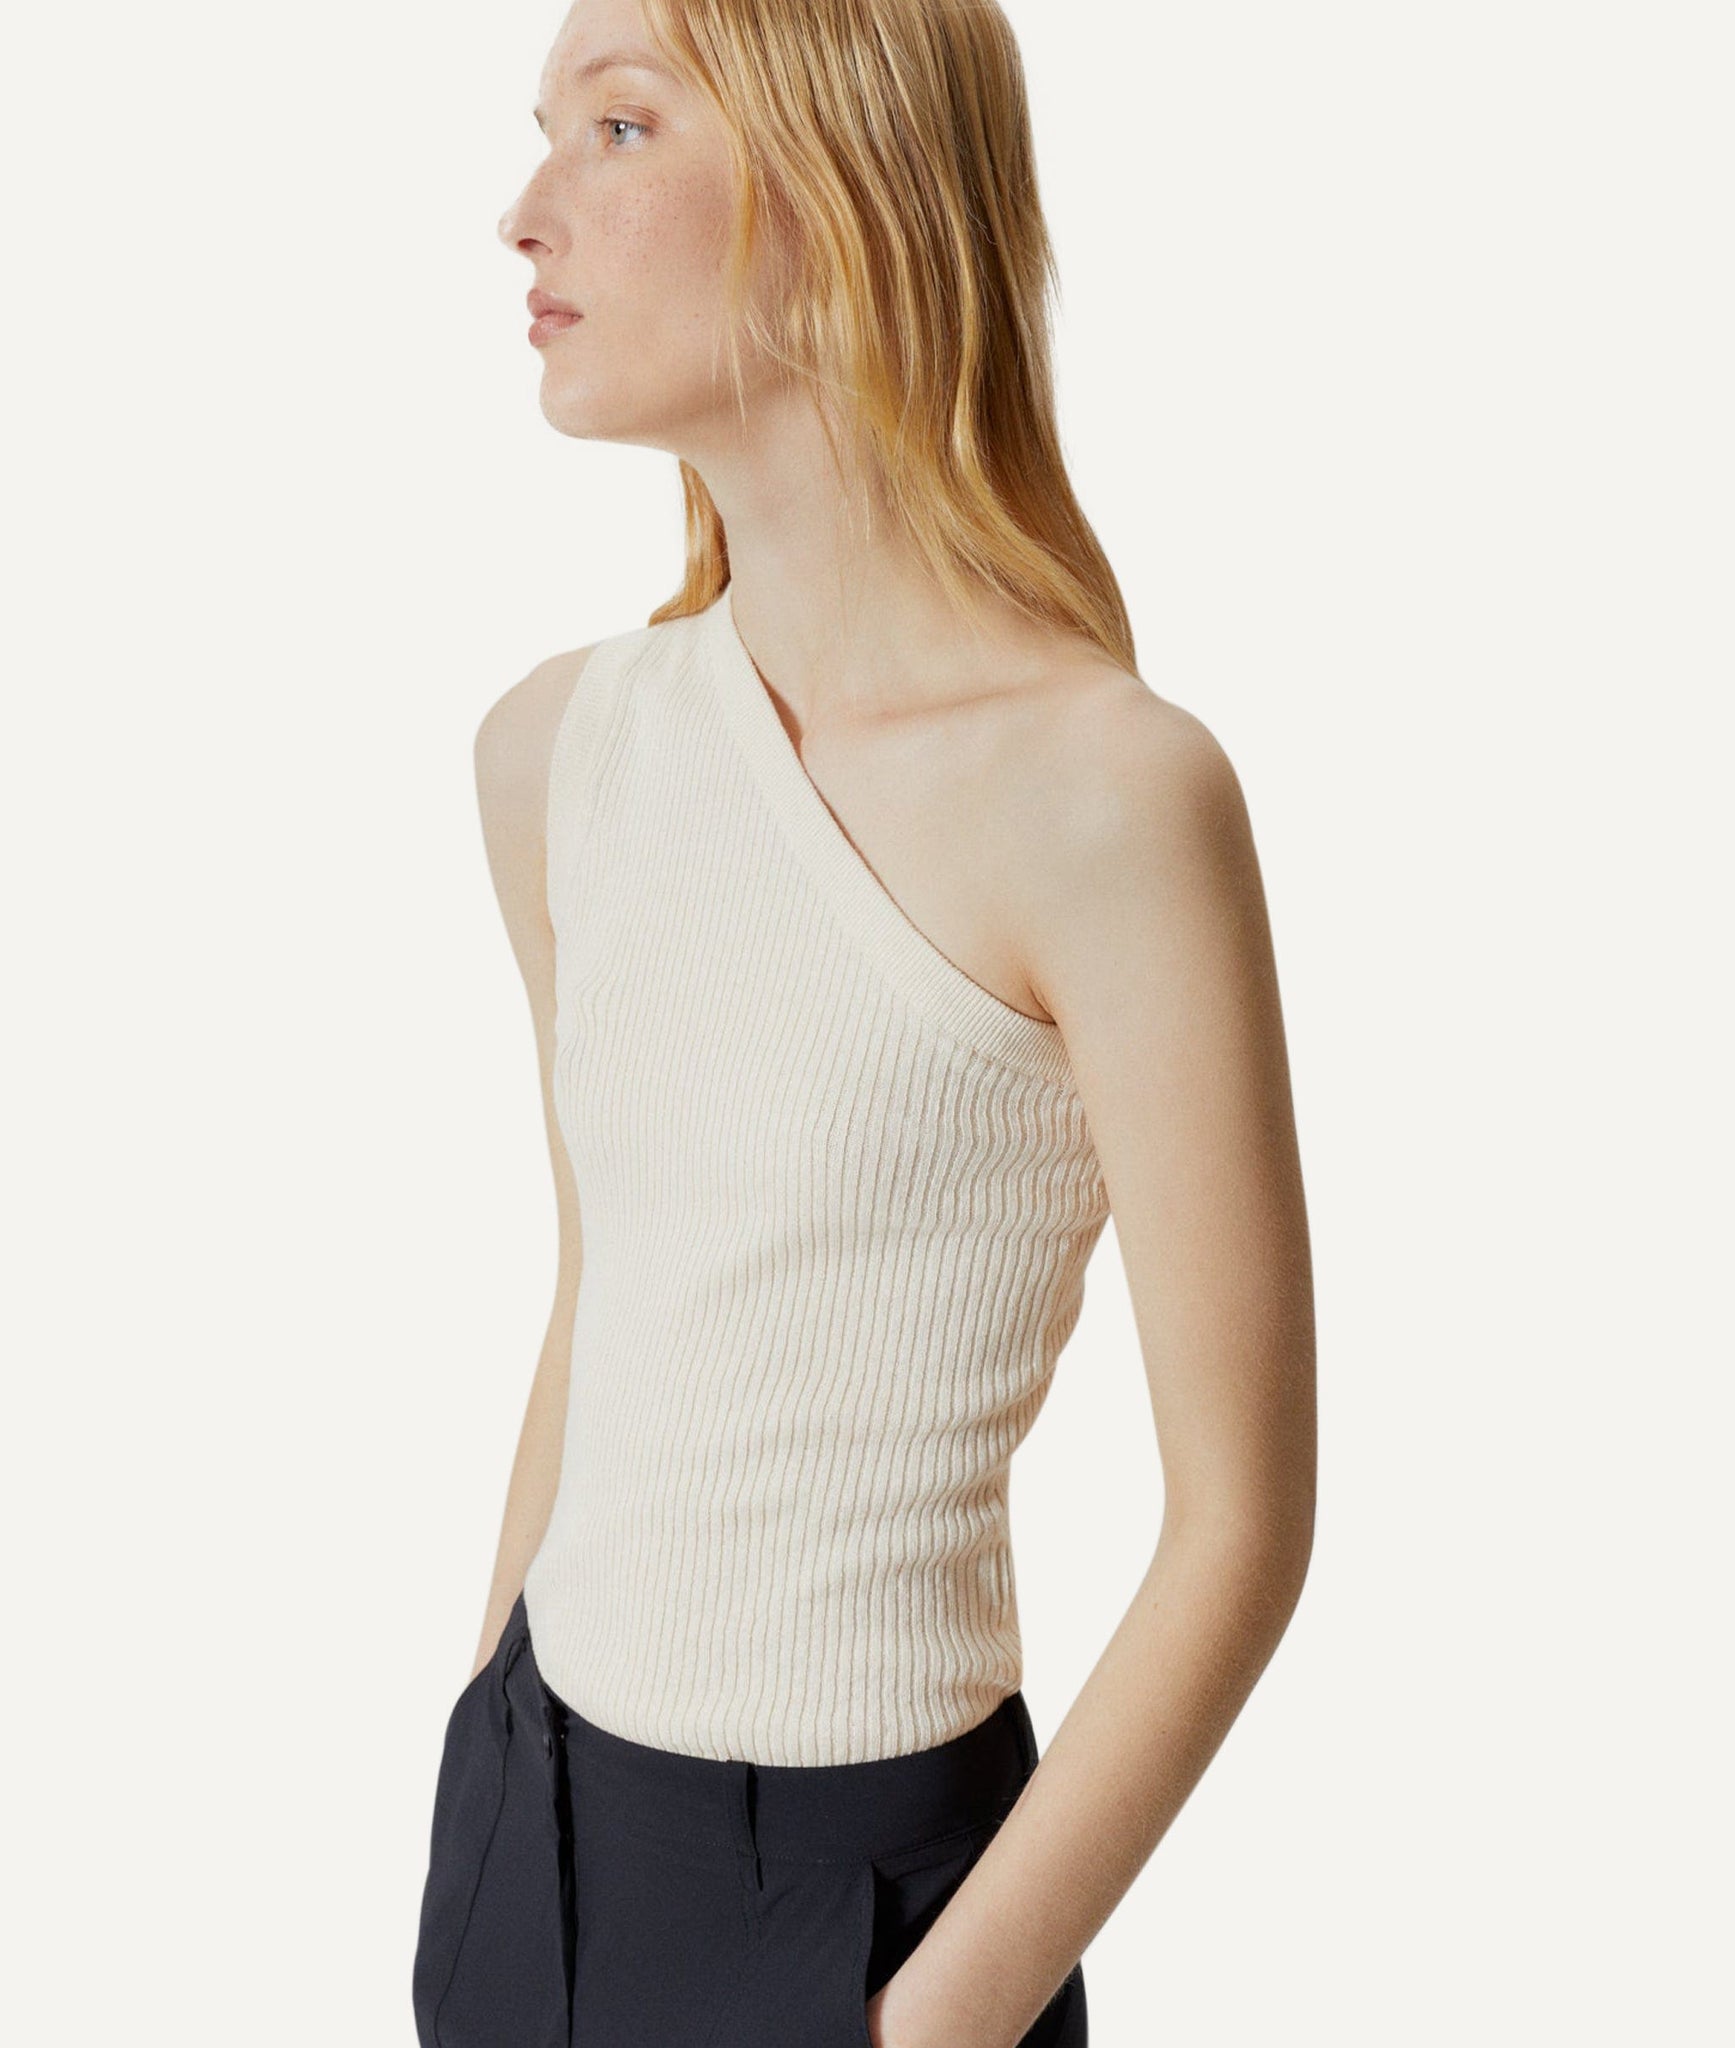 The Linen Cotton One-Shoulder Top